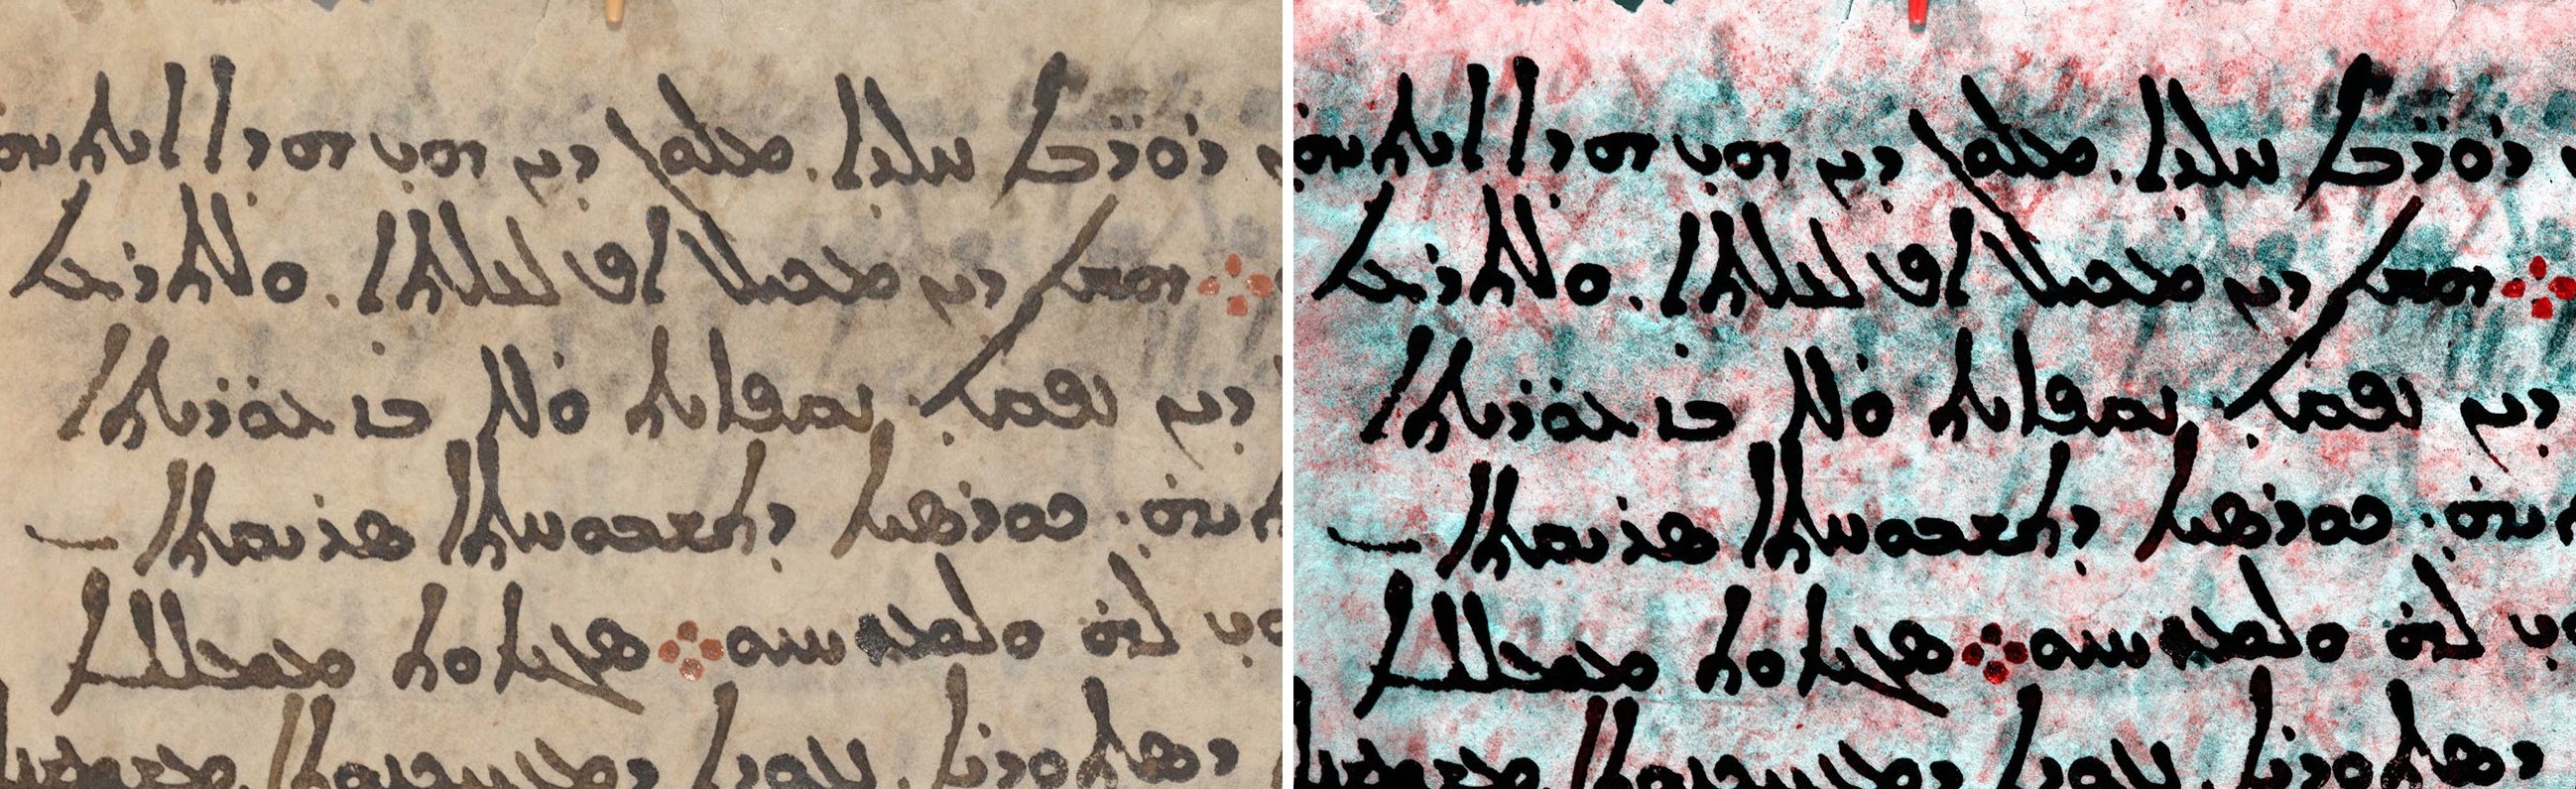 Imágenes multiespectrales del Codex, en rojo el texto en griego bajo el siríaco en negro.